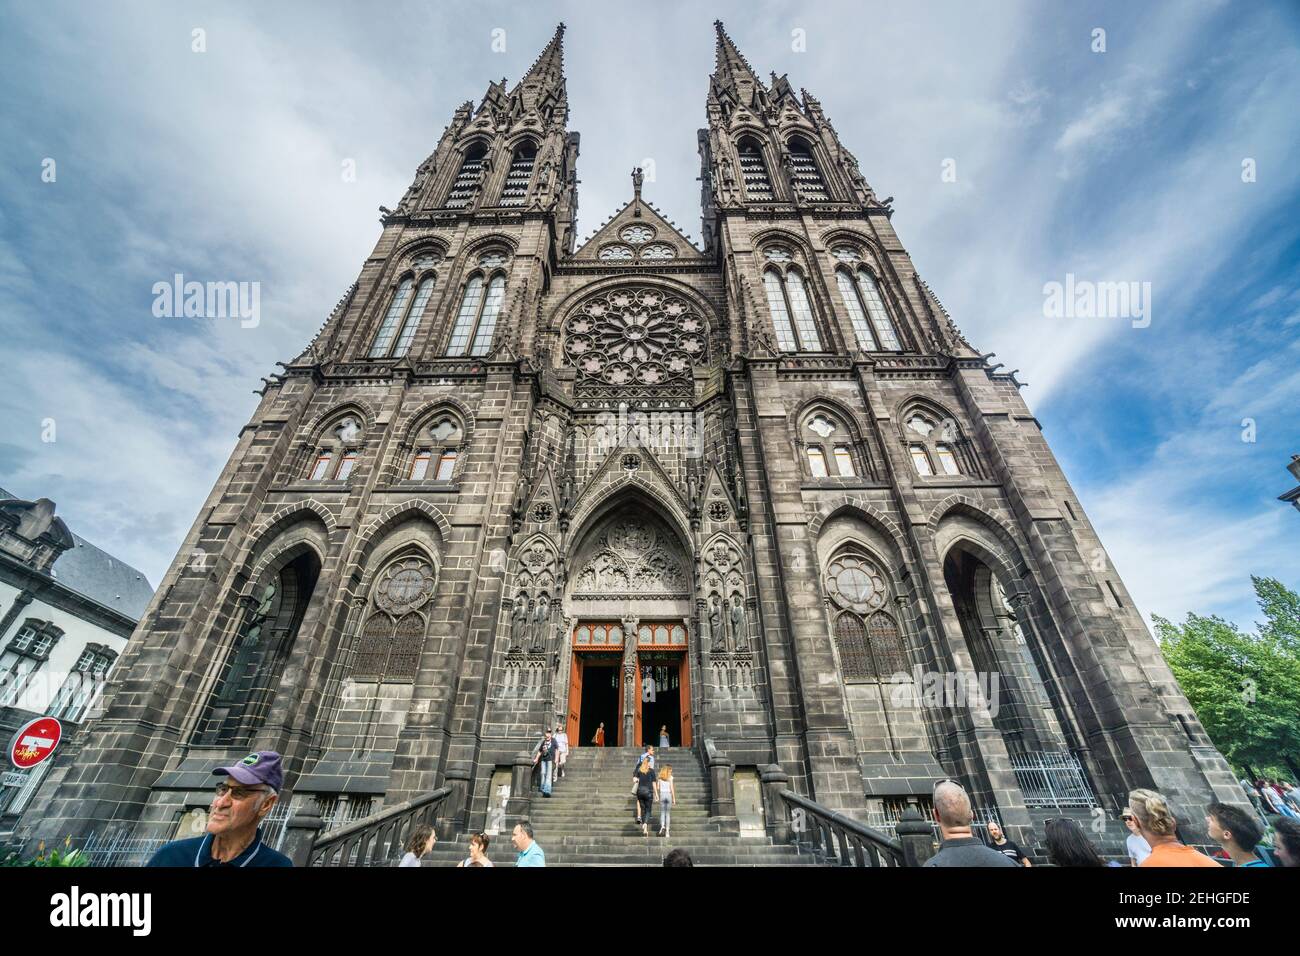 façade romanica e le guglie gemelle della Cattedrale di Clermont-Ferrand, dipartimento Puy-de-Dôme, regione Auvergne-Rhône-Alpes, Francia Foto Stock